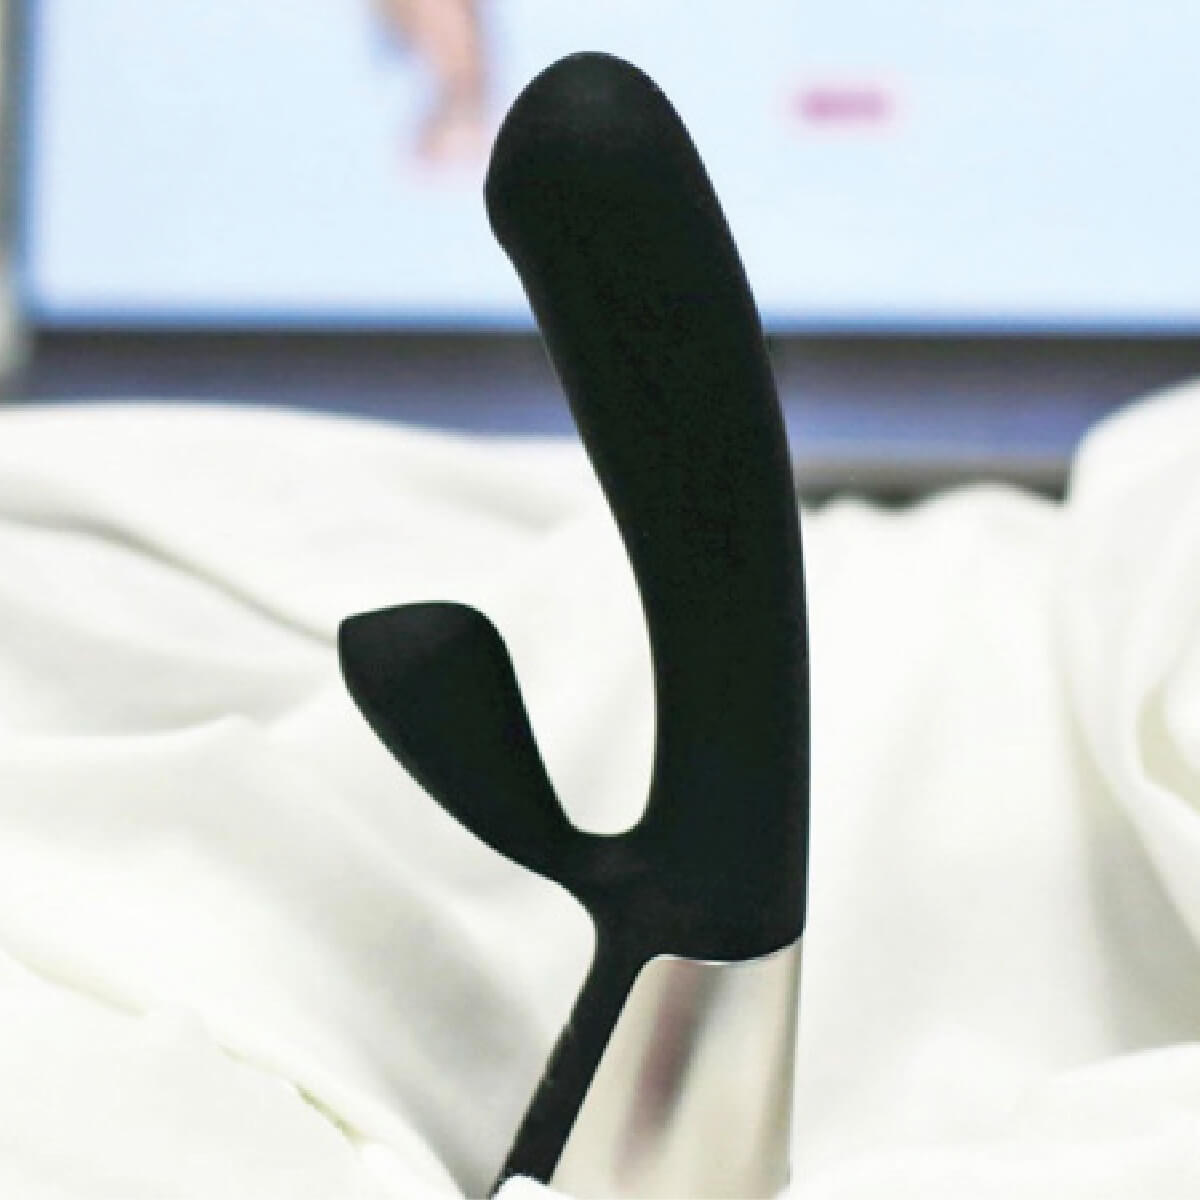 The dual stimulation rabbit vibrator Fuse by OhMiBod - Product image